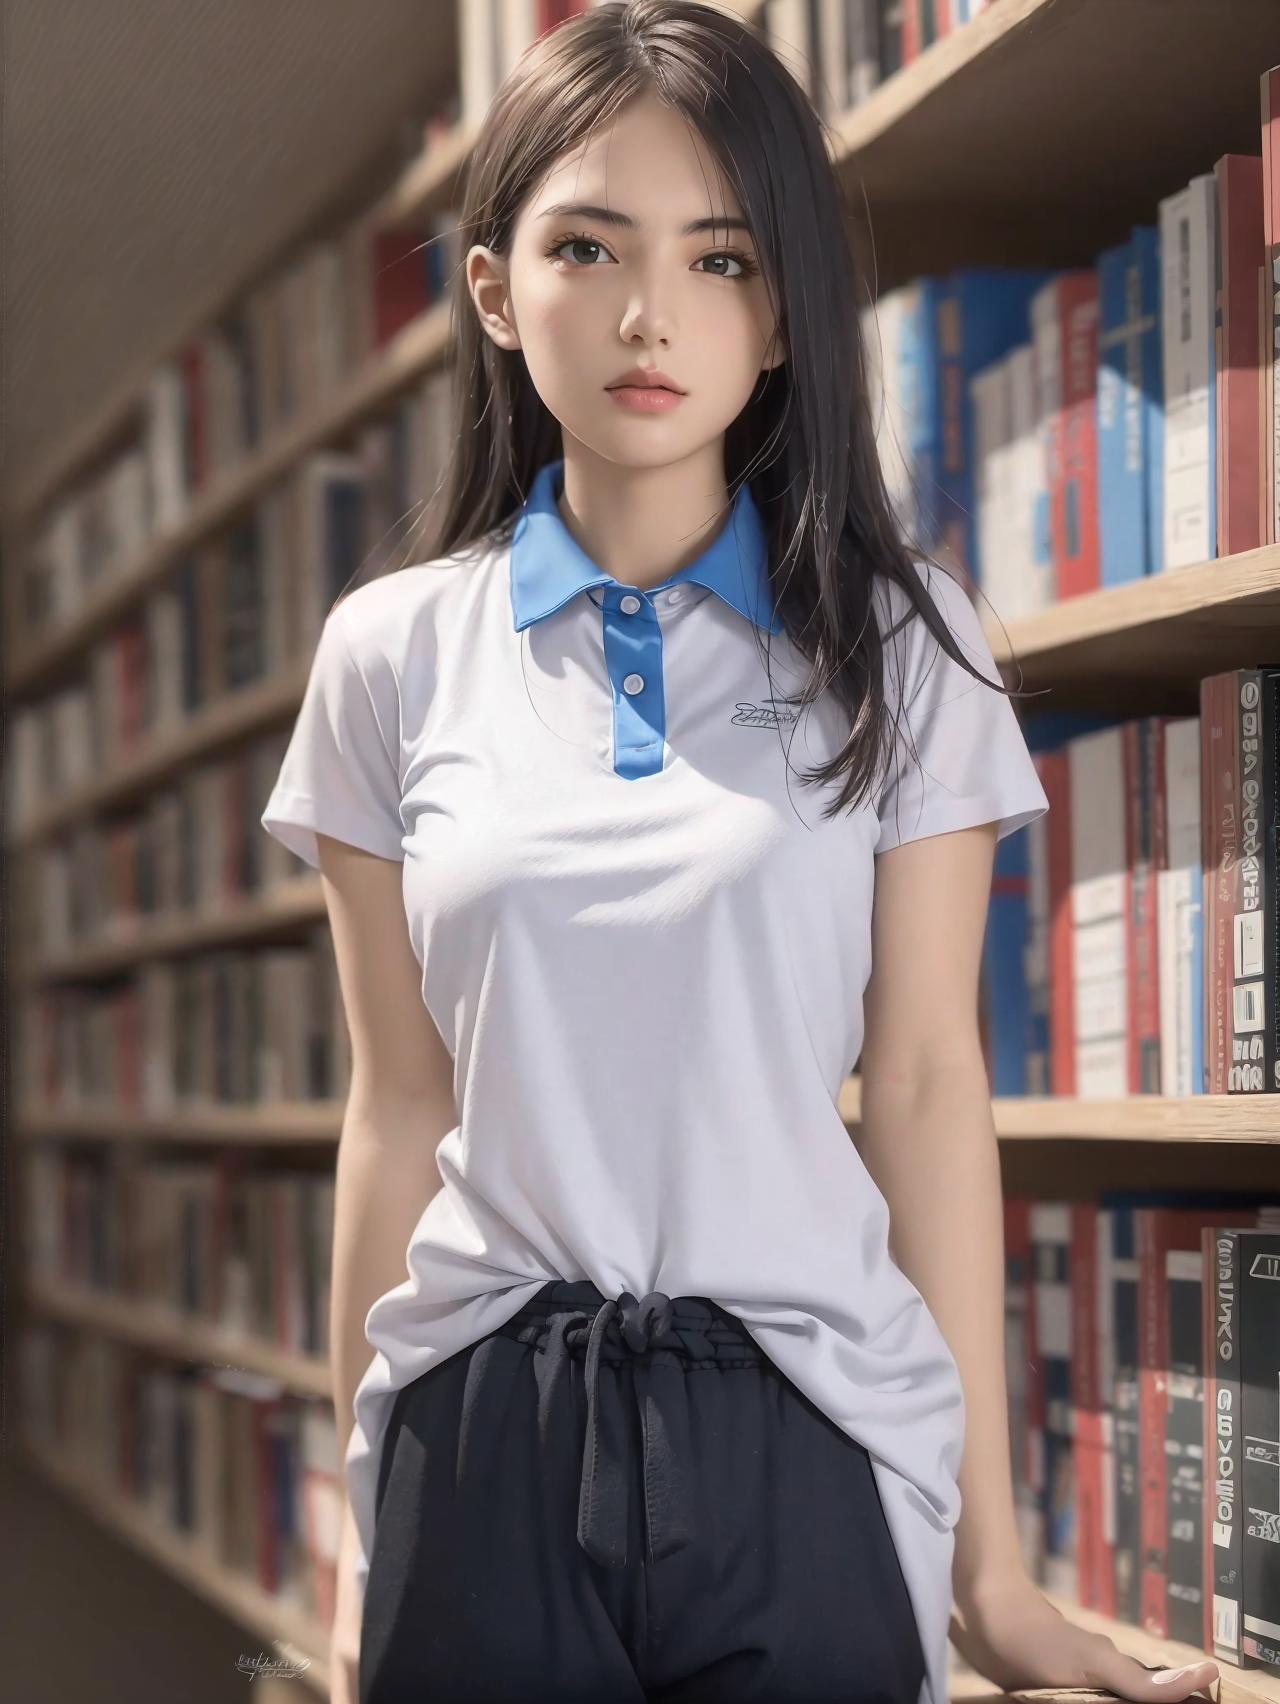 深圳校服Shenzhen uniform image by civitai